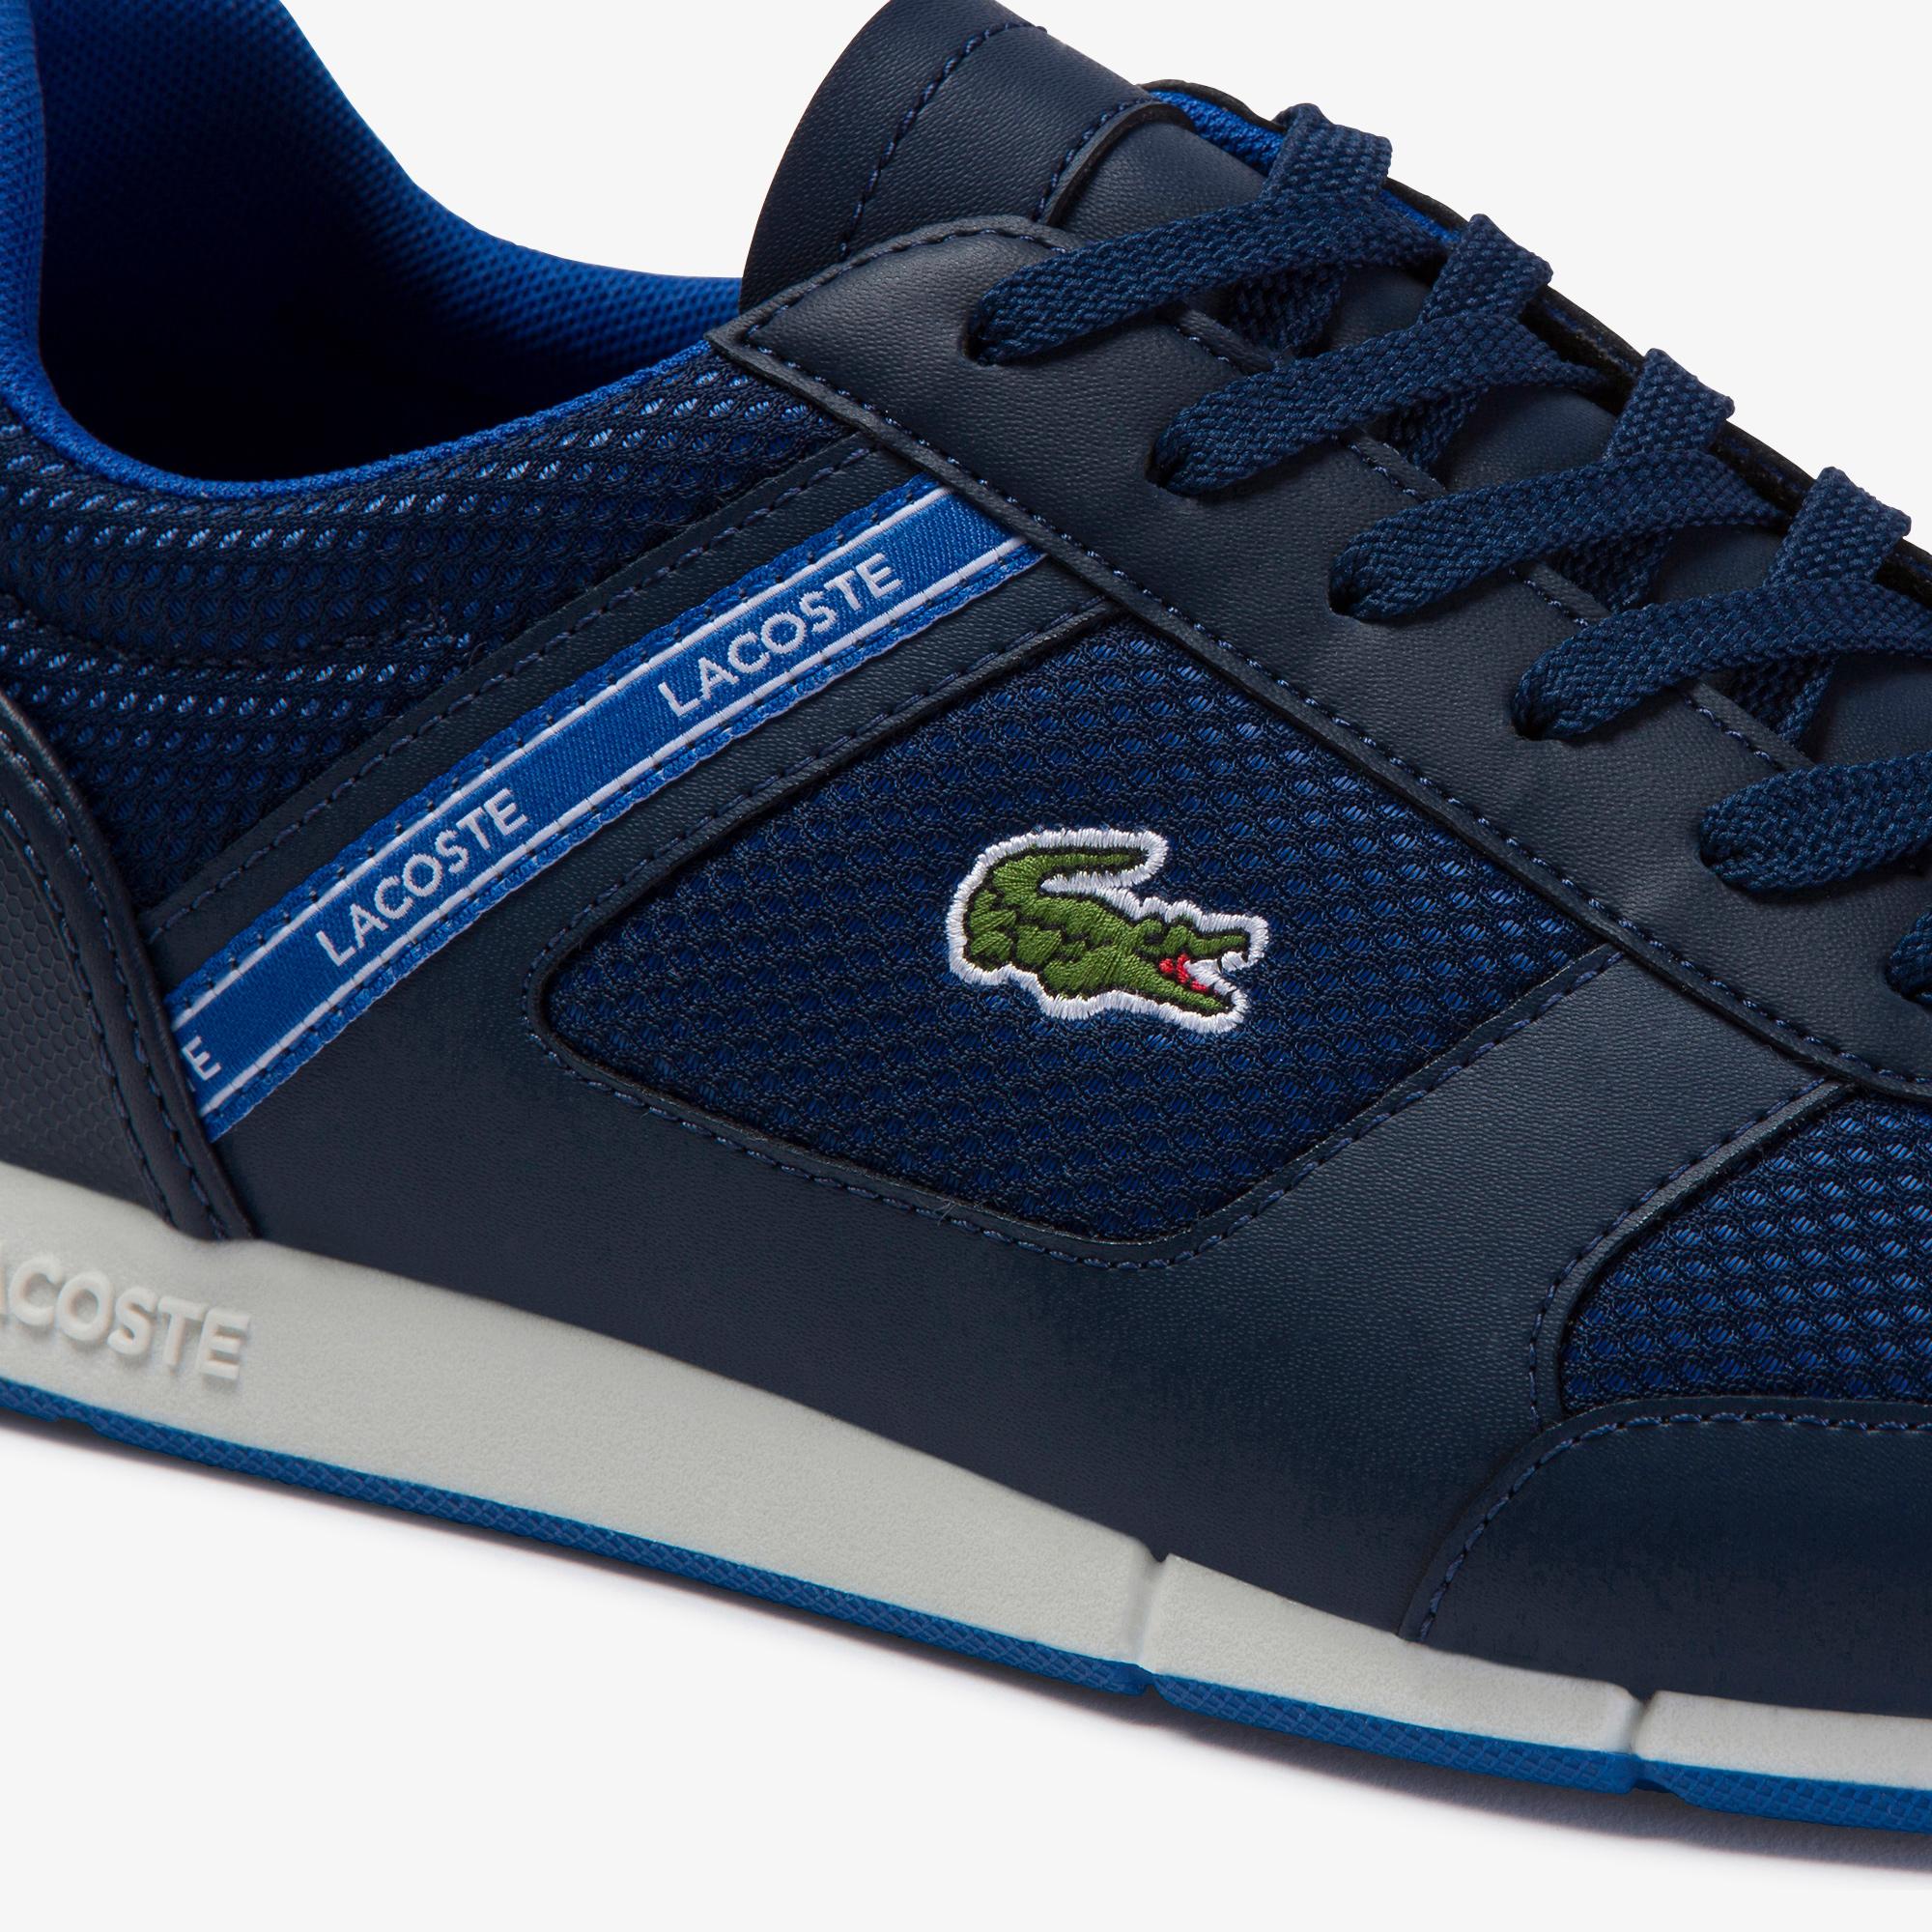 Lacoste Menerva Sport 120 1 Cma Erkek Lacivert - Mavi Ayakkabı. 5